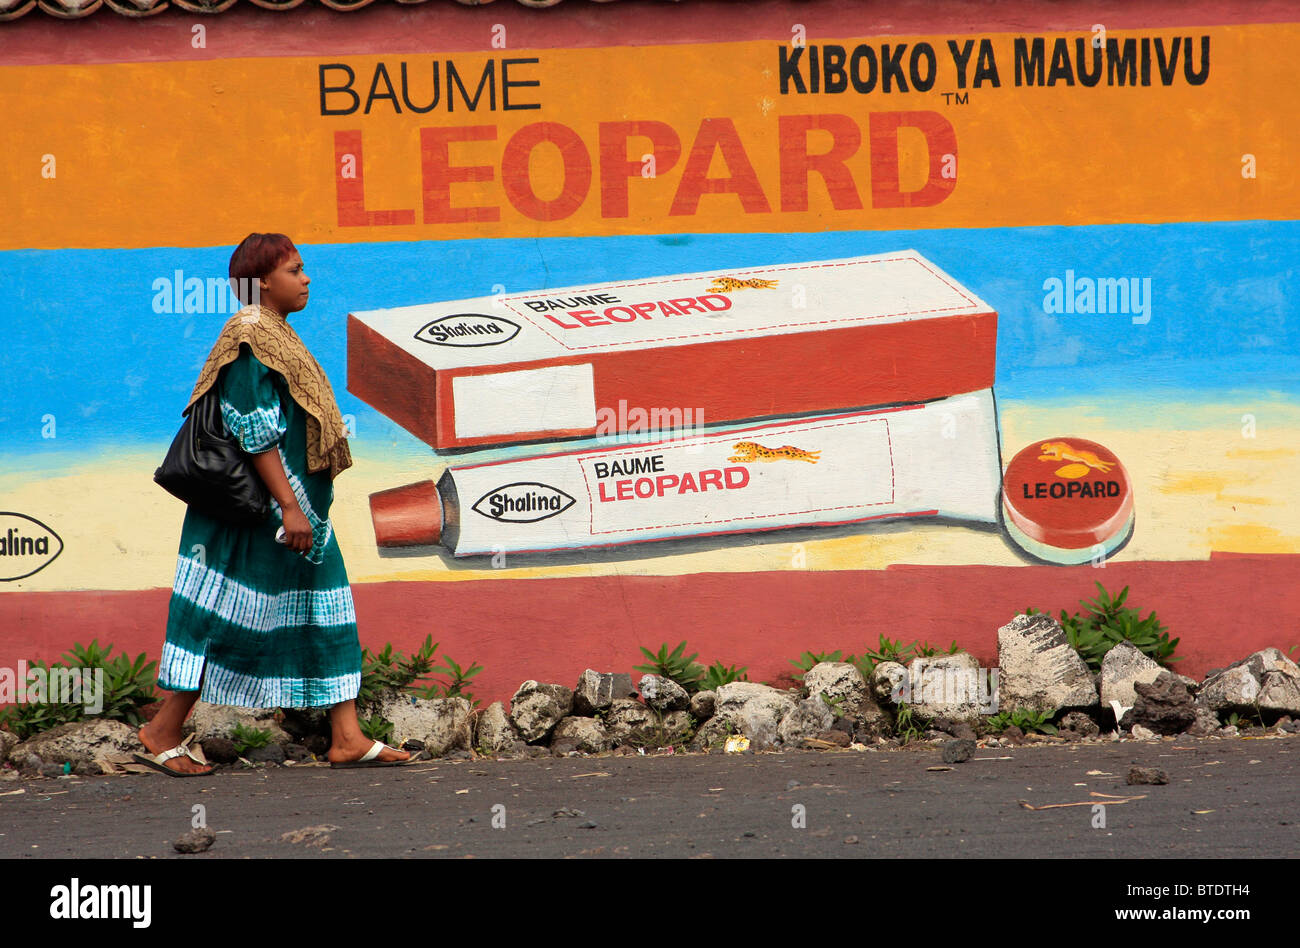 Mujer caminando por un colorido mural de publicidad Foto de stock